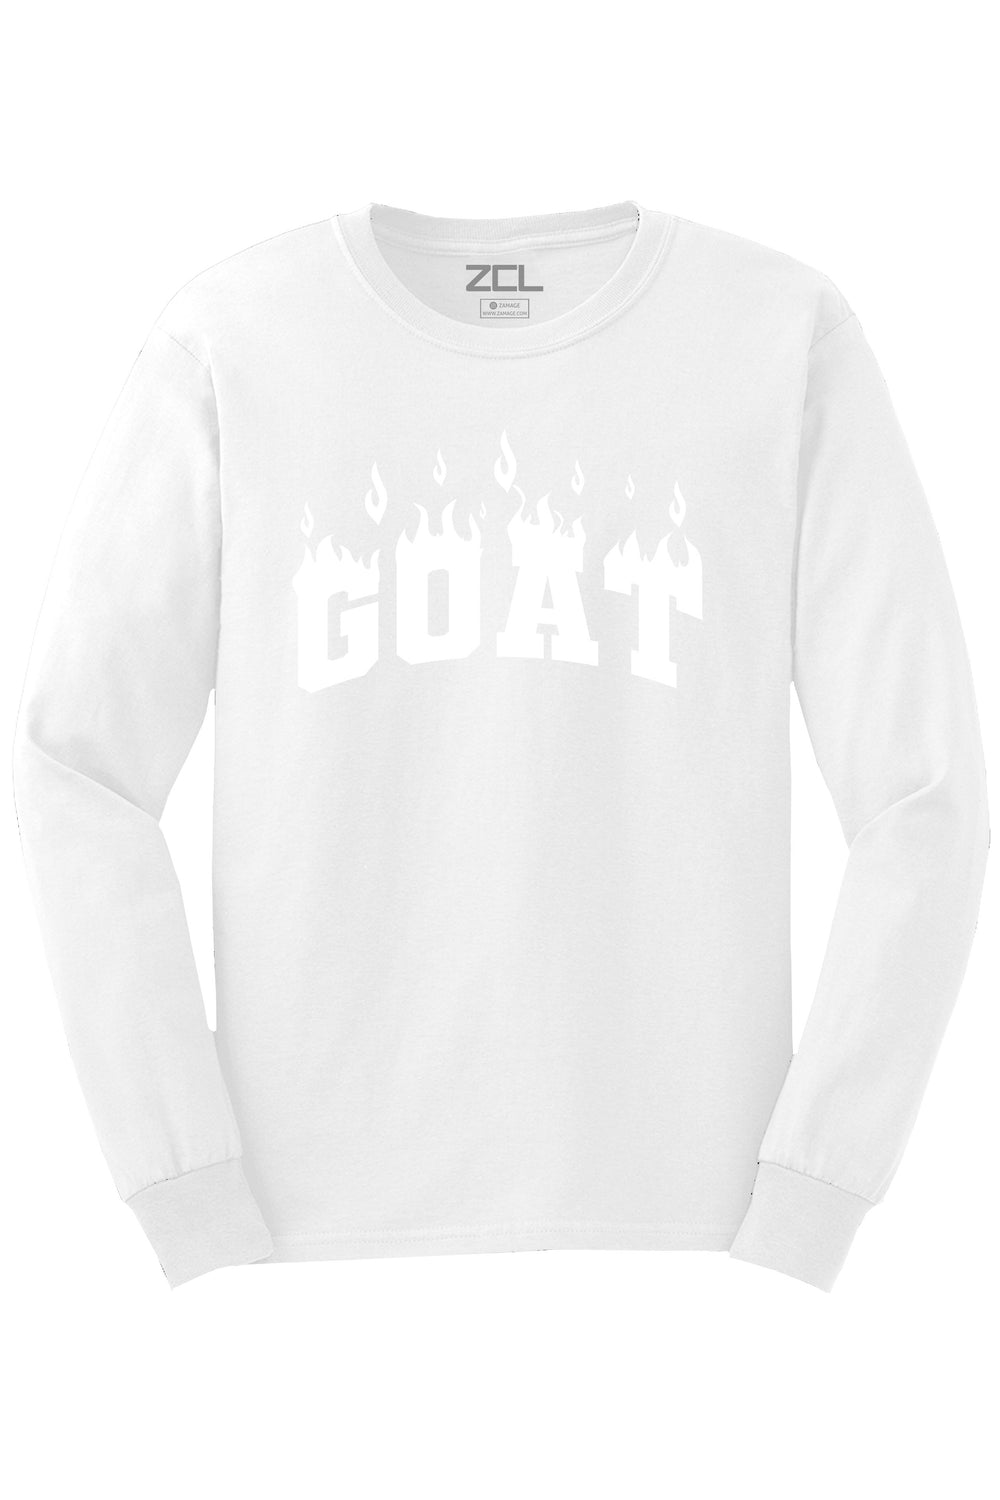 Goat Flame Long Sleeve Tee (White Logo) - Zamage